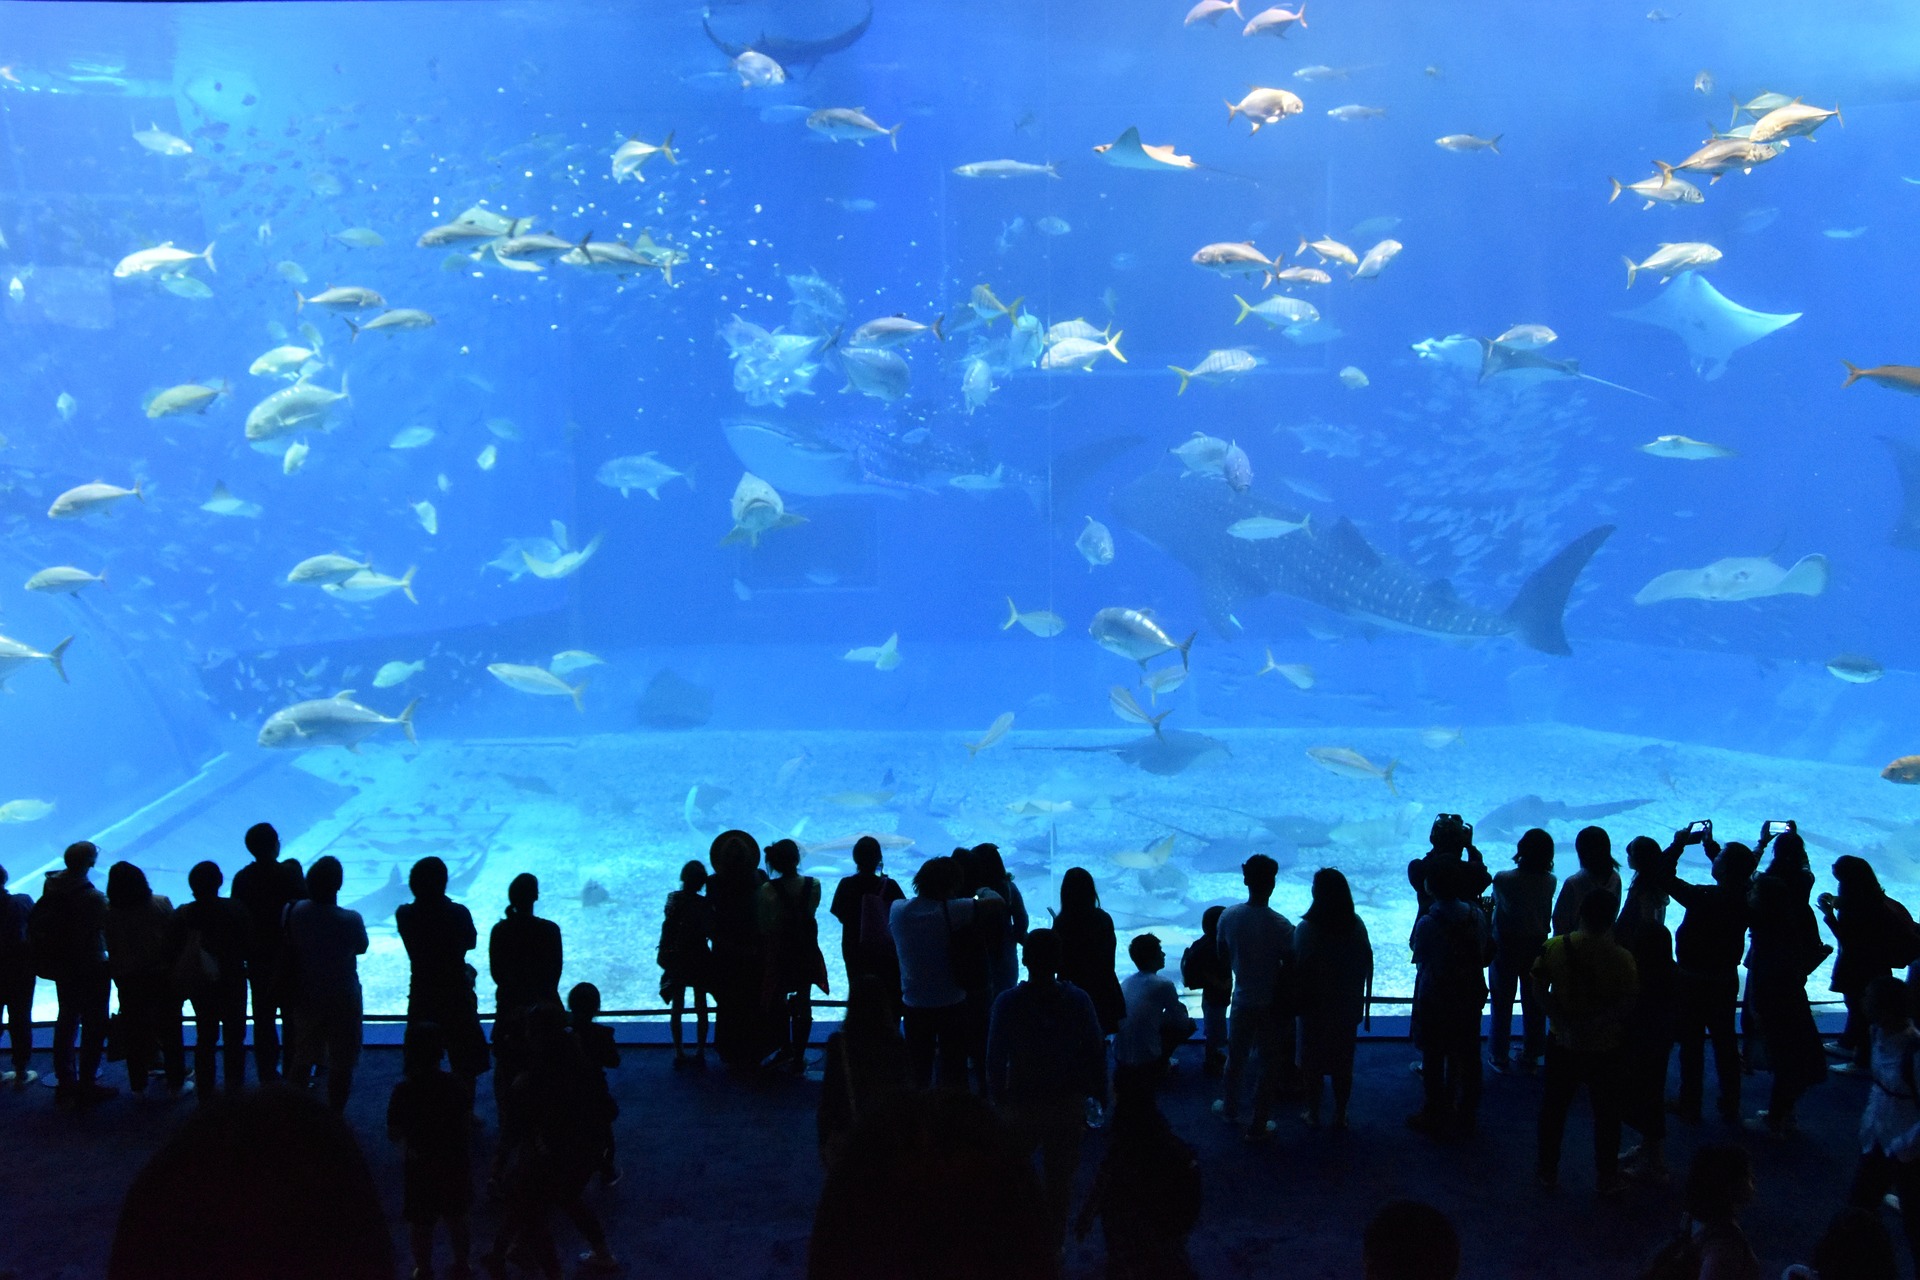 오키나와 츄라우미 아쿠아리움의 거대한 메인 수조 안 물고기들을 감상하는 관람객들